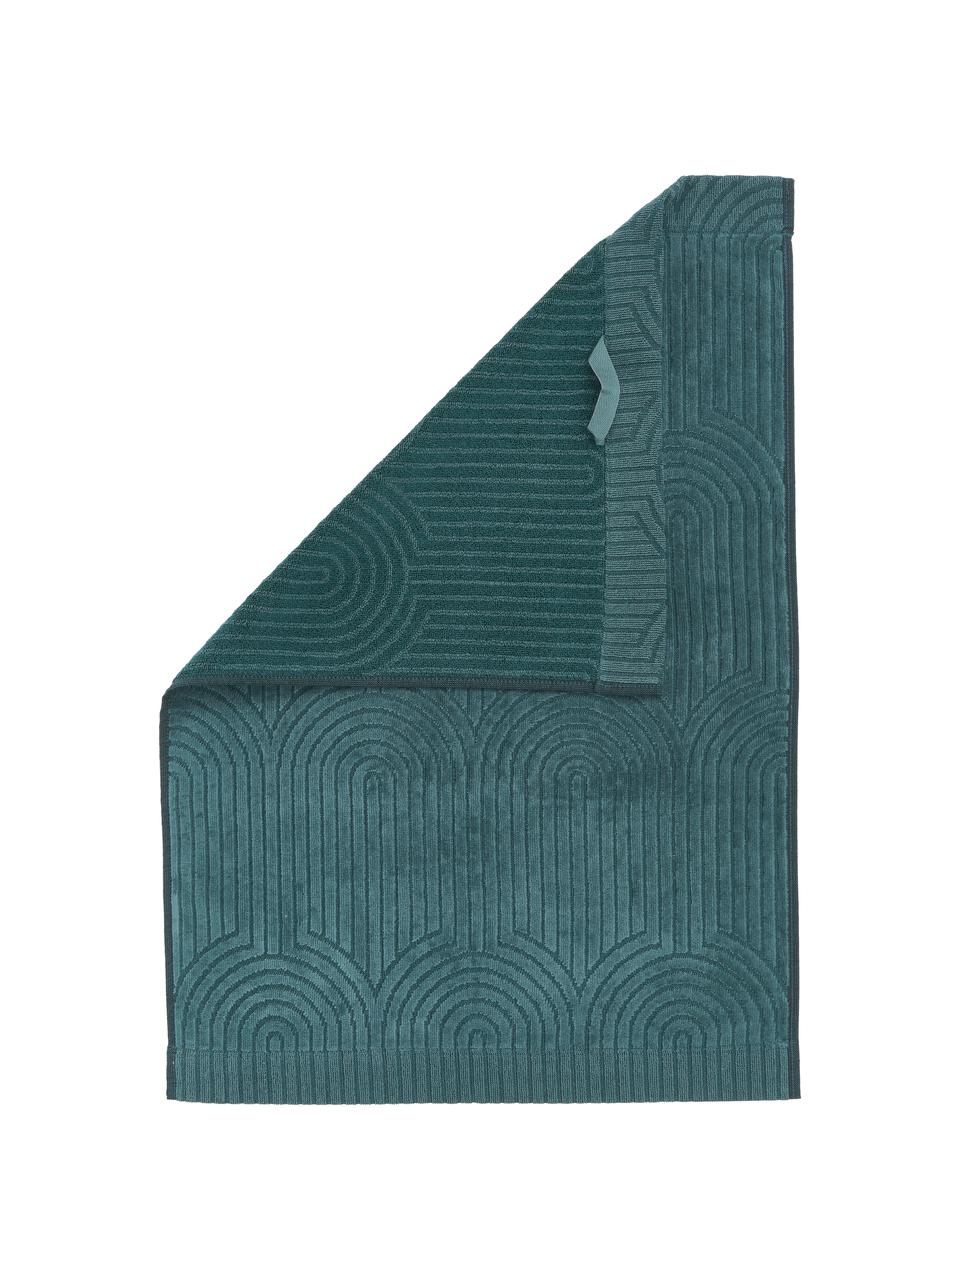 Osuška s grafickým reliéfním vzorem v různých velikostech Janet, 100% bavlna, certifikát BCI, Smaragdově zelená, Ručník, Š 50 cm, D 70 cm